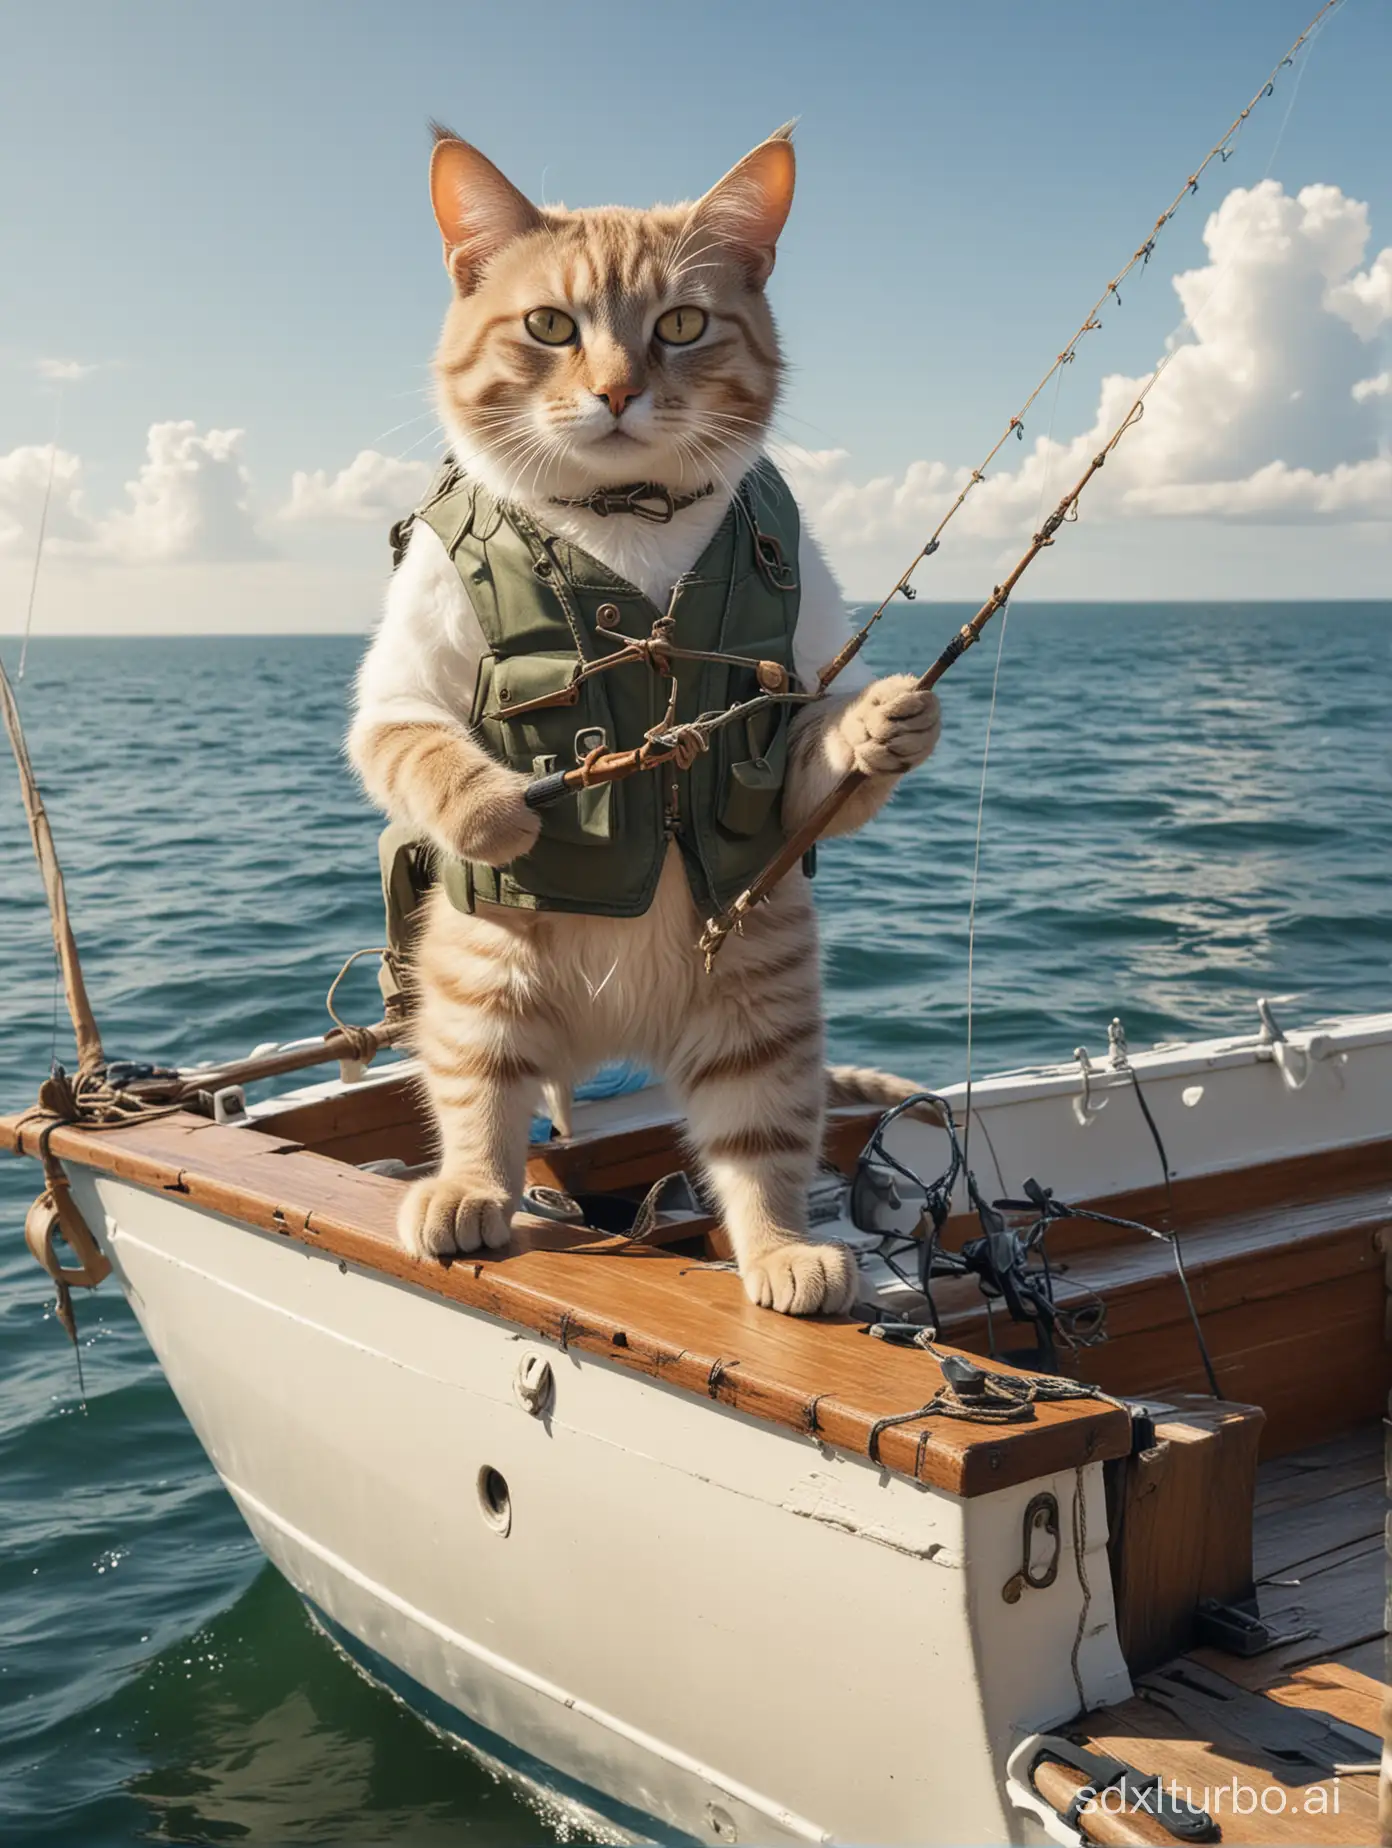 Anthropomorphic-Cat-Fishing-Adventure-in-Sunny-Seas